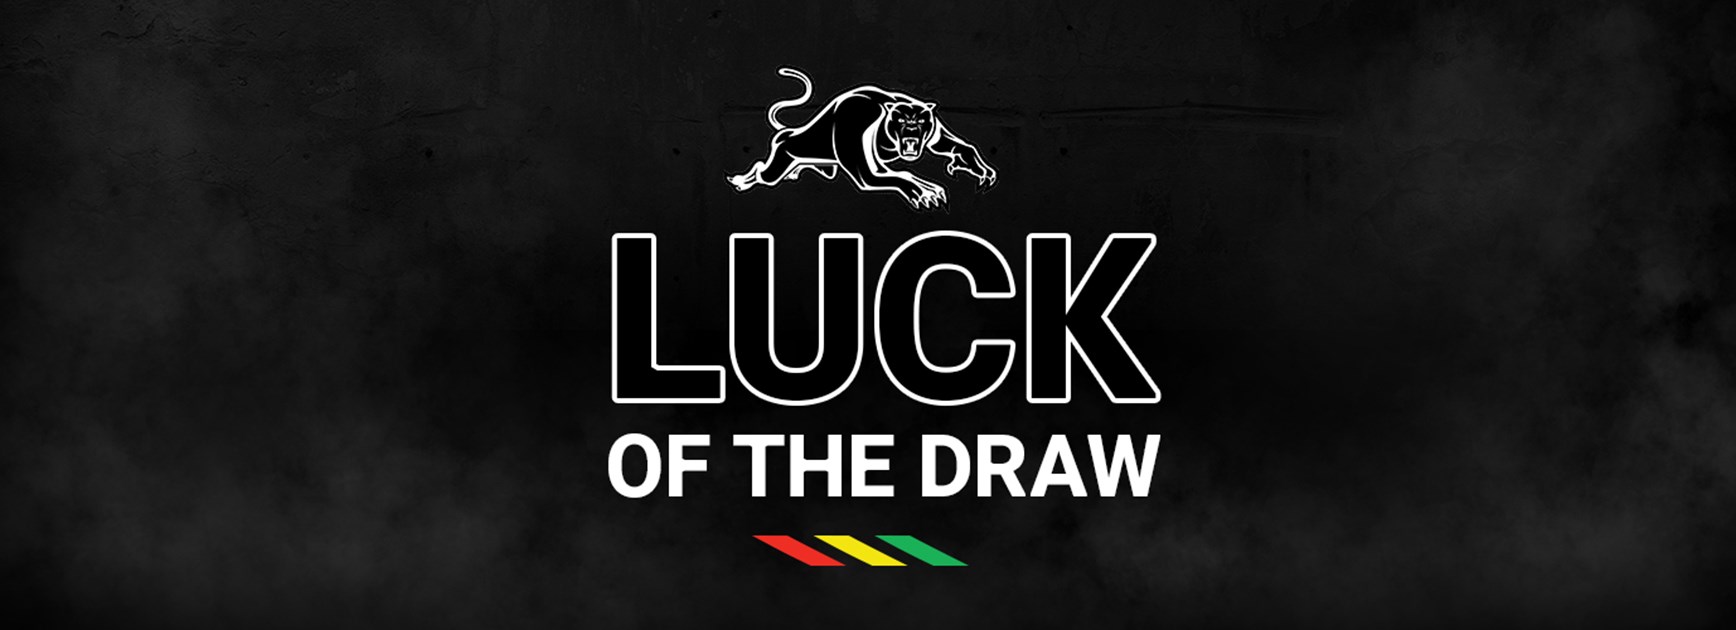 Panthers 2019 draw snapshot